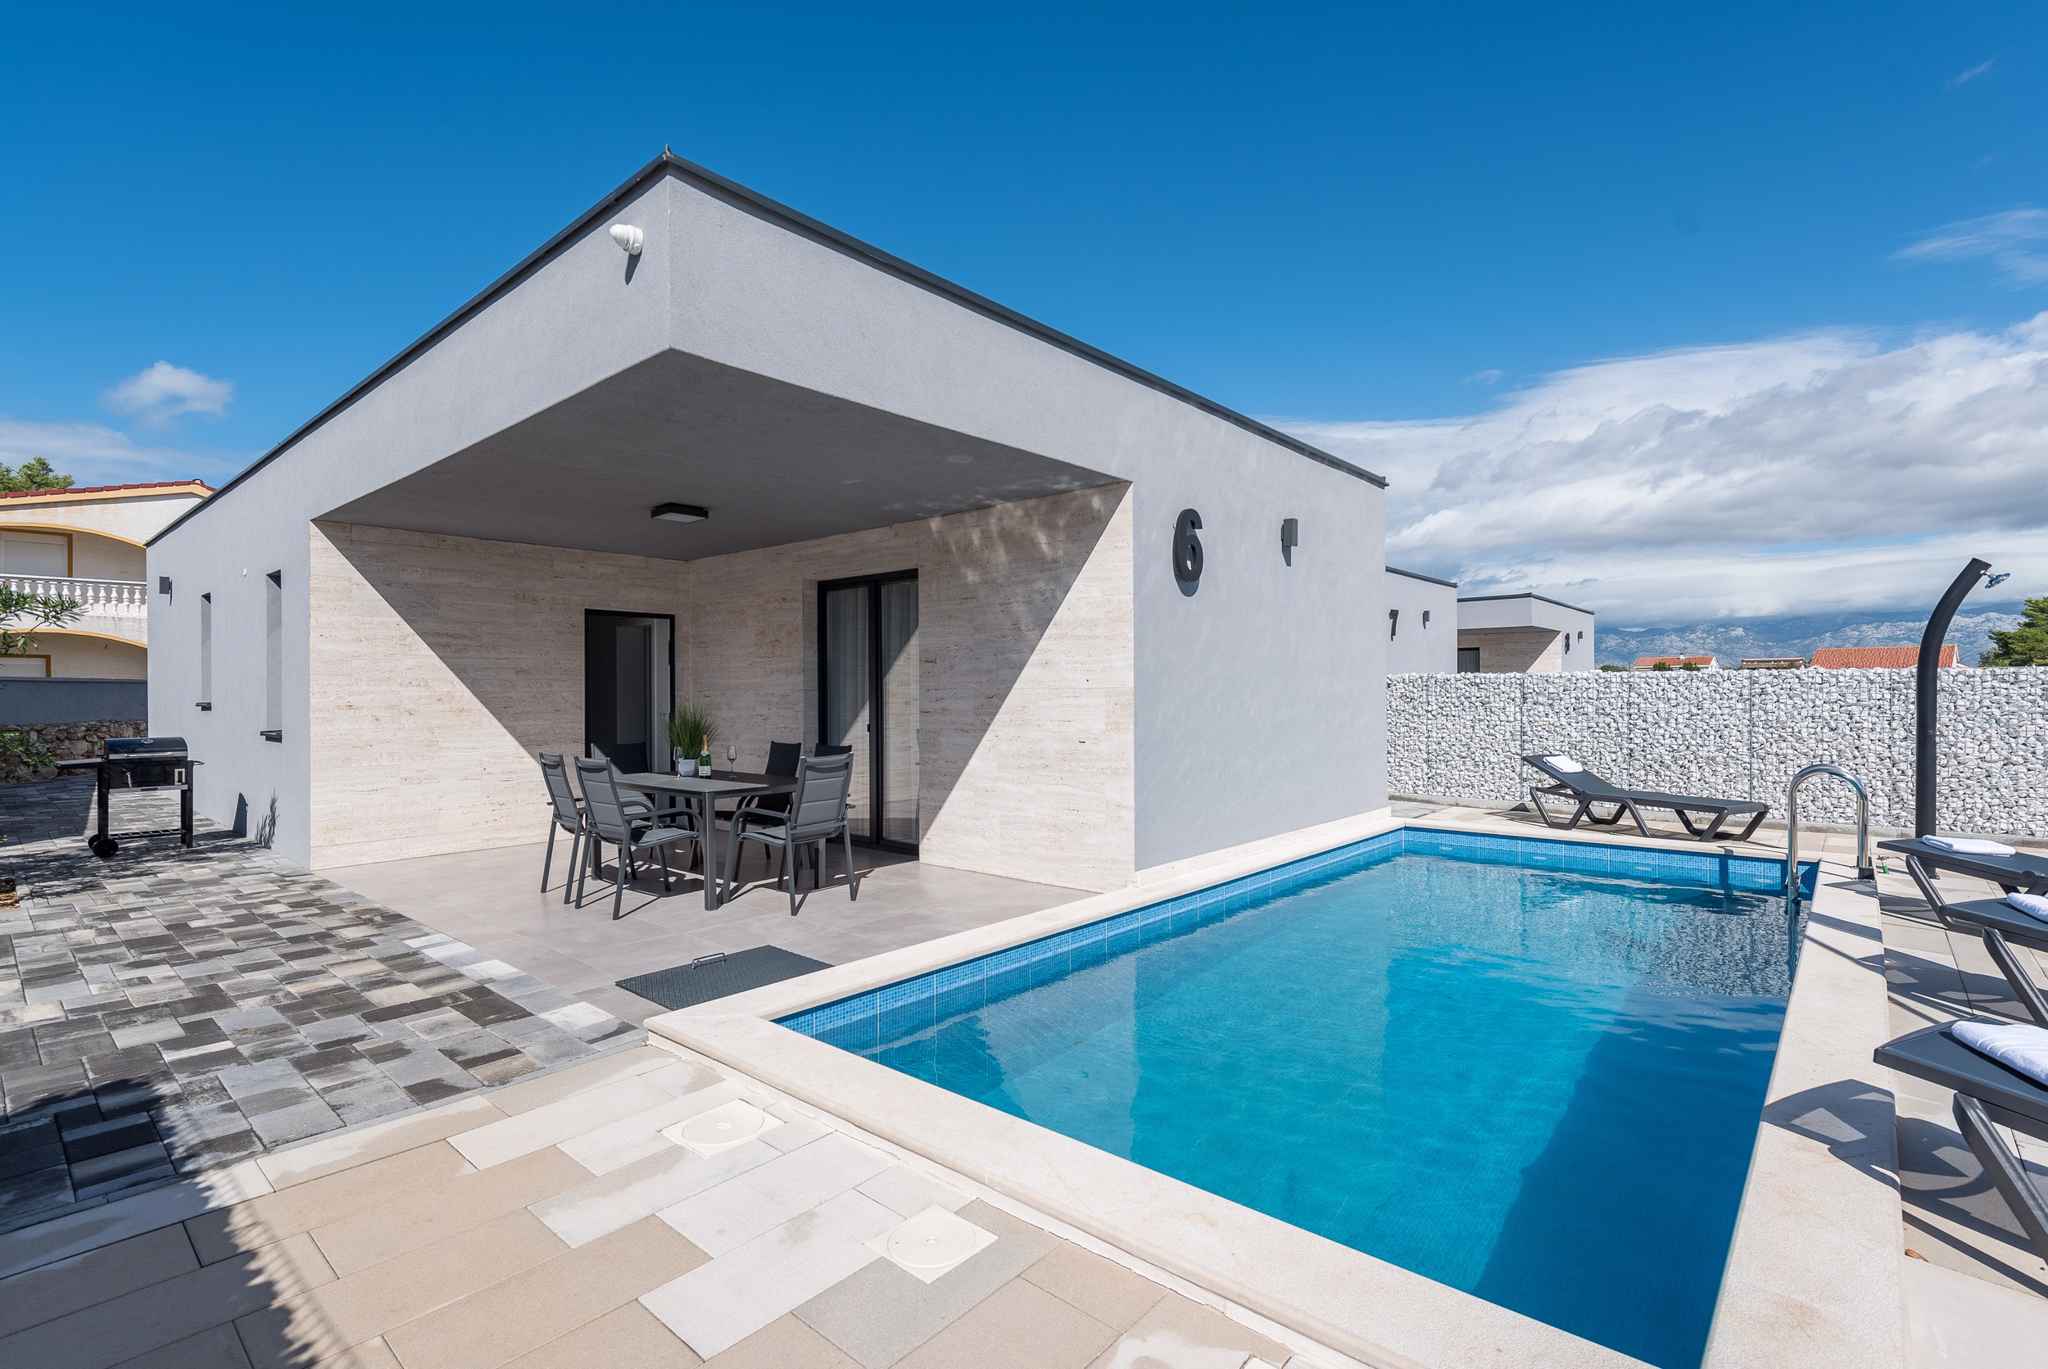 Villa mit 4 Sternen mit Pool in einem Luxusresort  Ferienhaus in Dalmatien